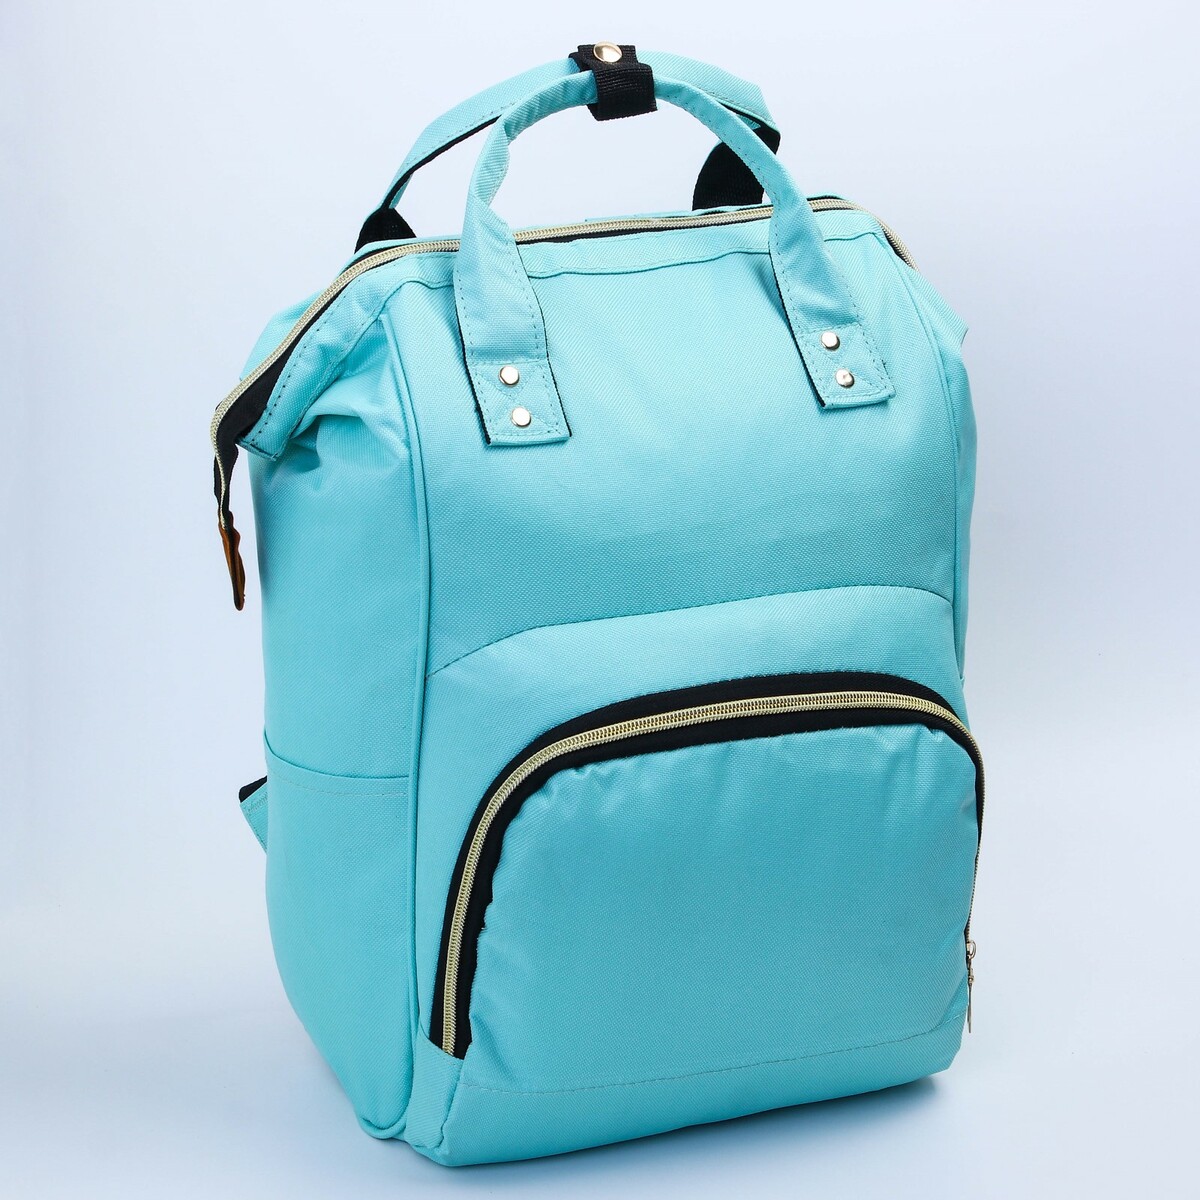 Сумка-рюкзак для хранения вещей малыша с крючком для коляски, цвет бирюзовый